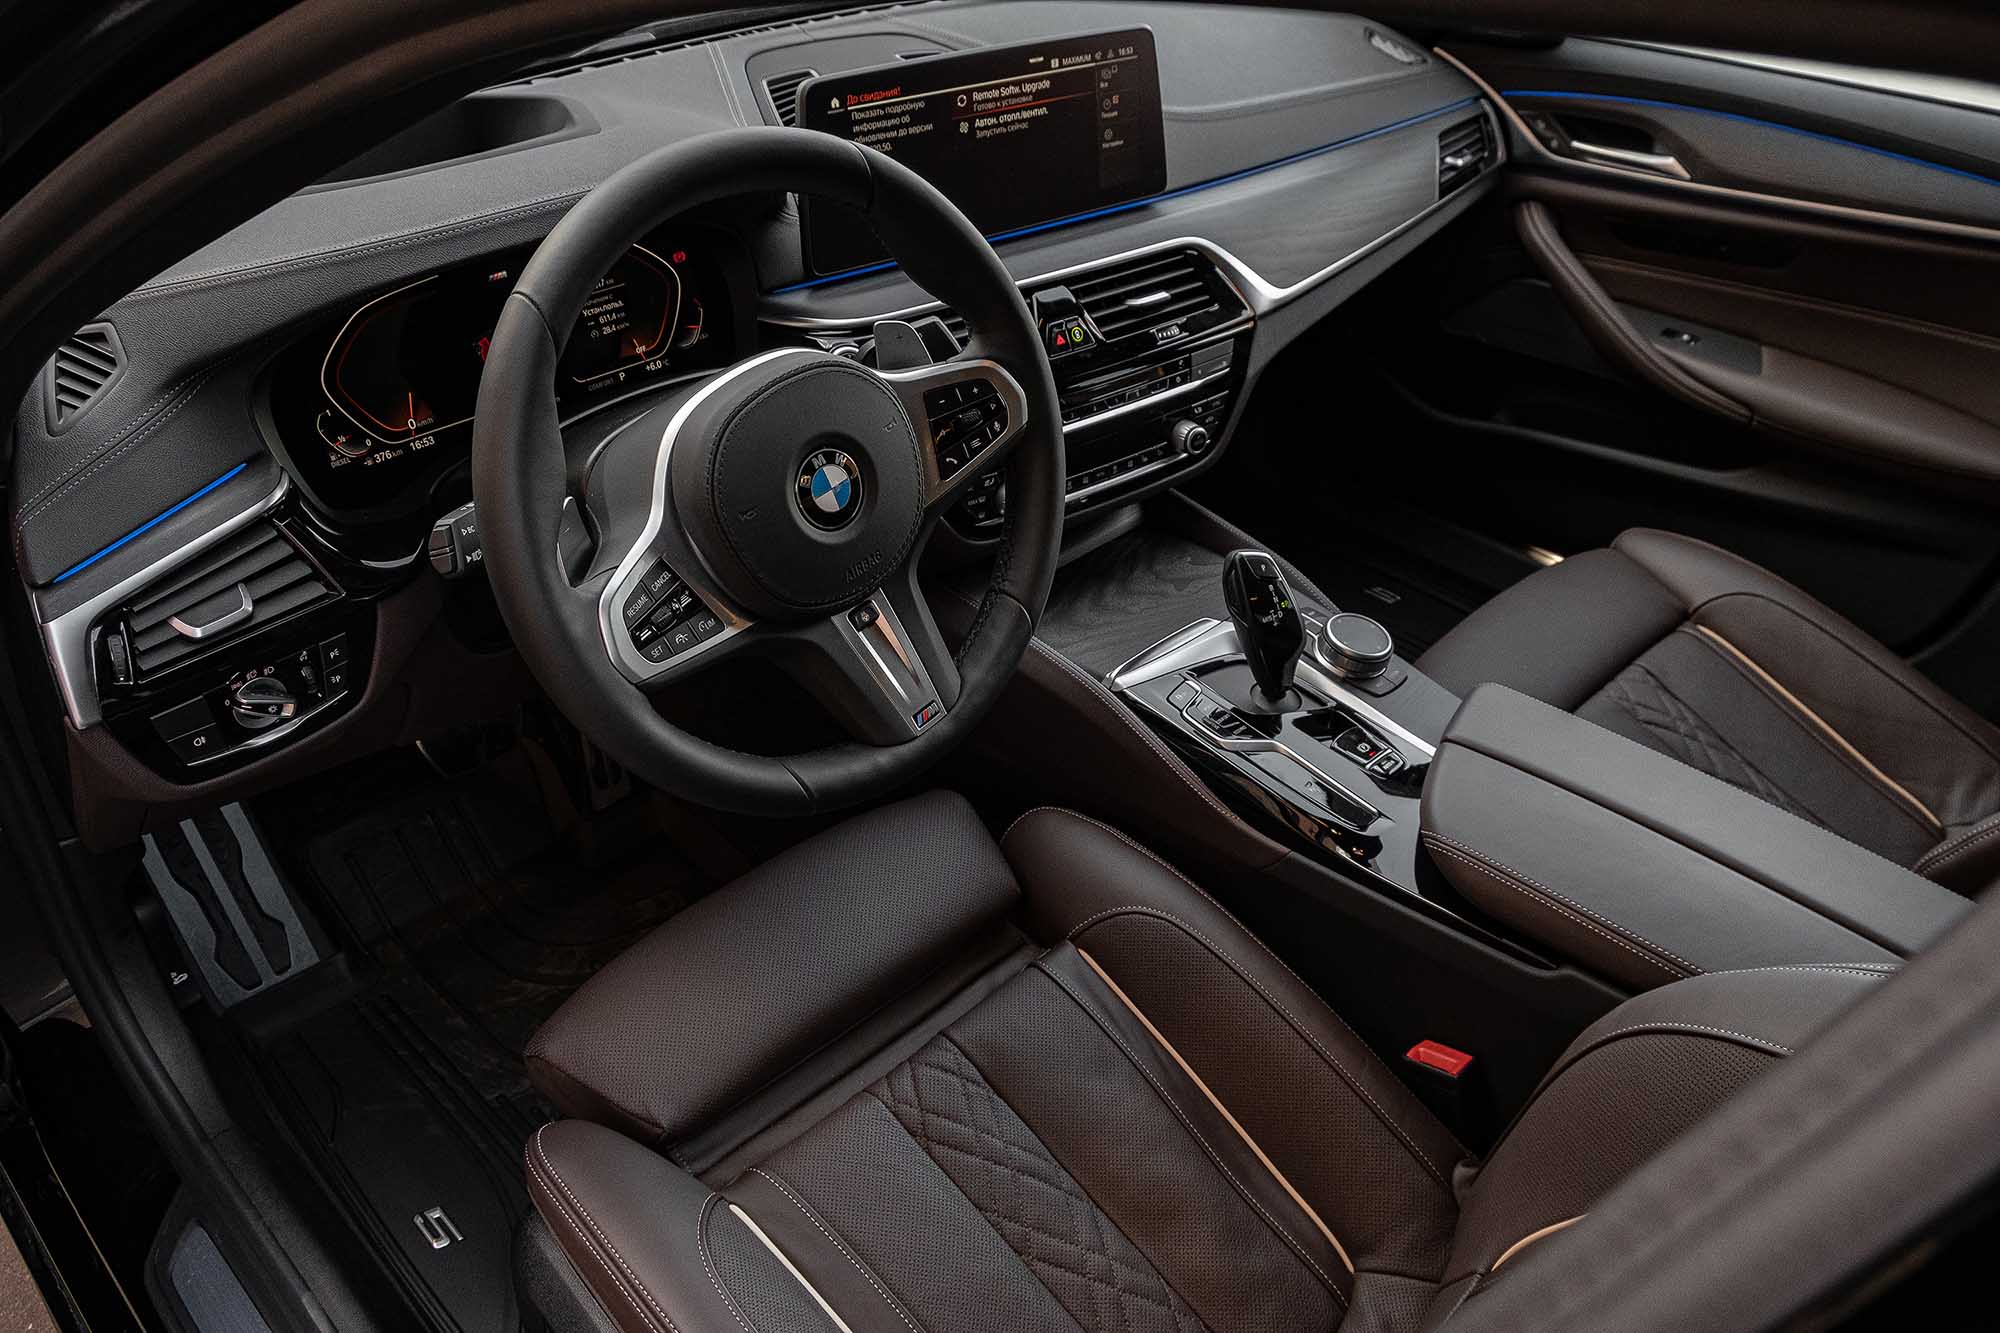 Аренда  BMW 5er G30 M-Sport  4 класса 2017 года в городе Минск от 149 $/сутки,  двигатель: Бензин , объем 4.4 литров, КАСКО (Мультидрайв), без водителя, вид 3 - West Group